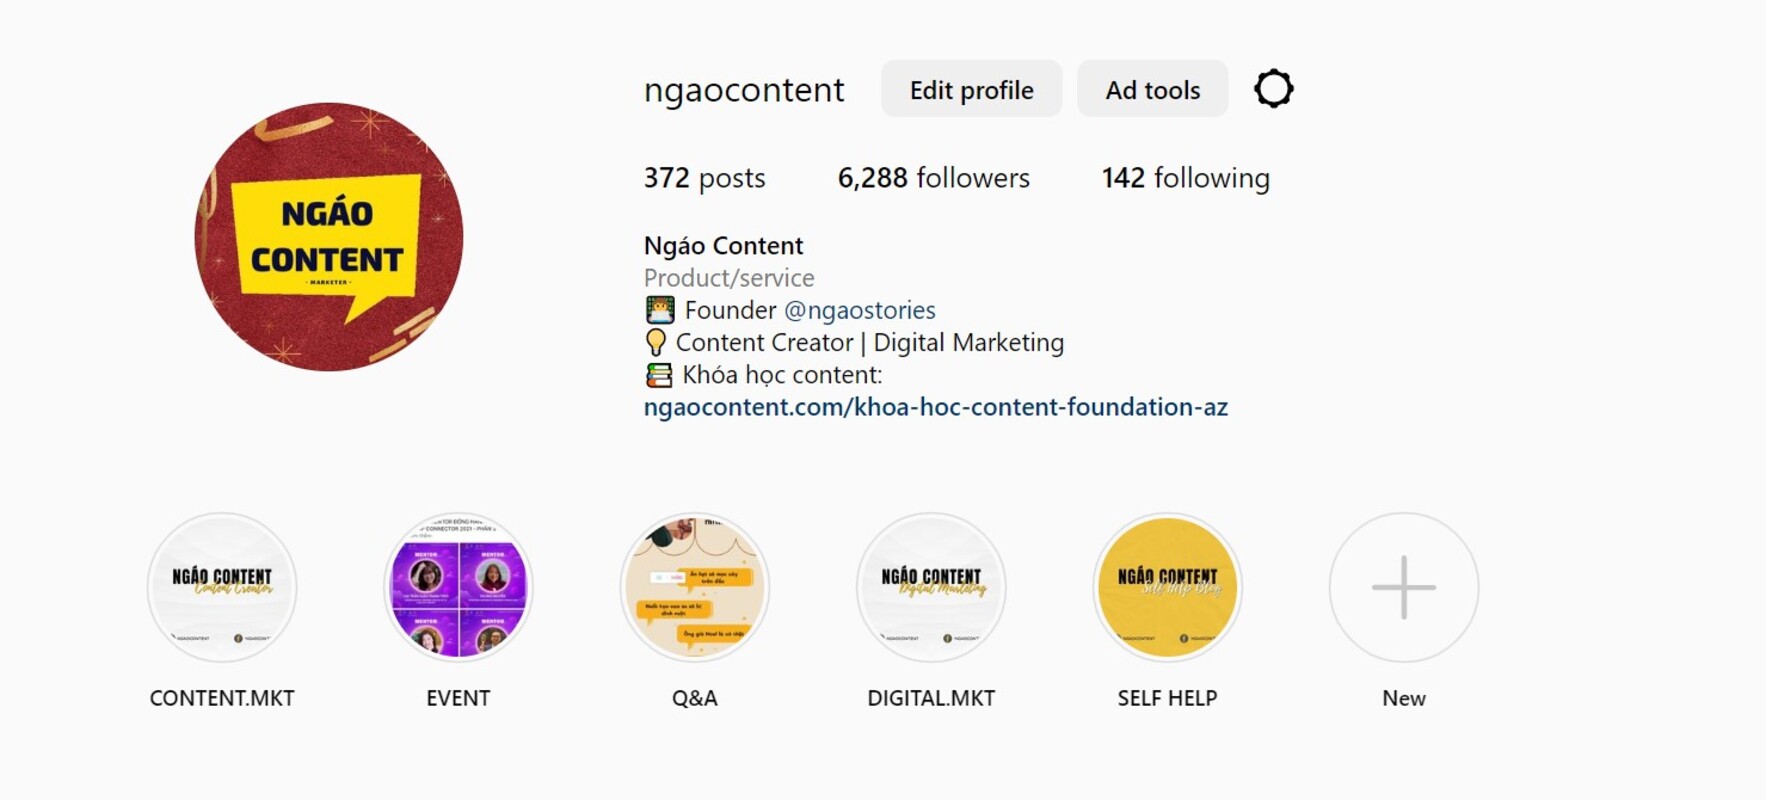 Tài khoản Instagram doanh nghiệp cung cấp nhiều tính năng phục vụ cho công việc